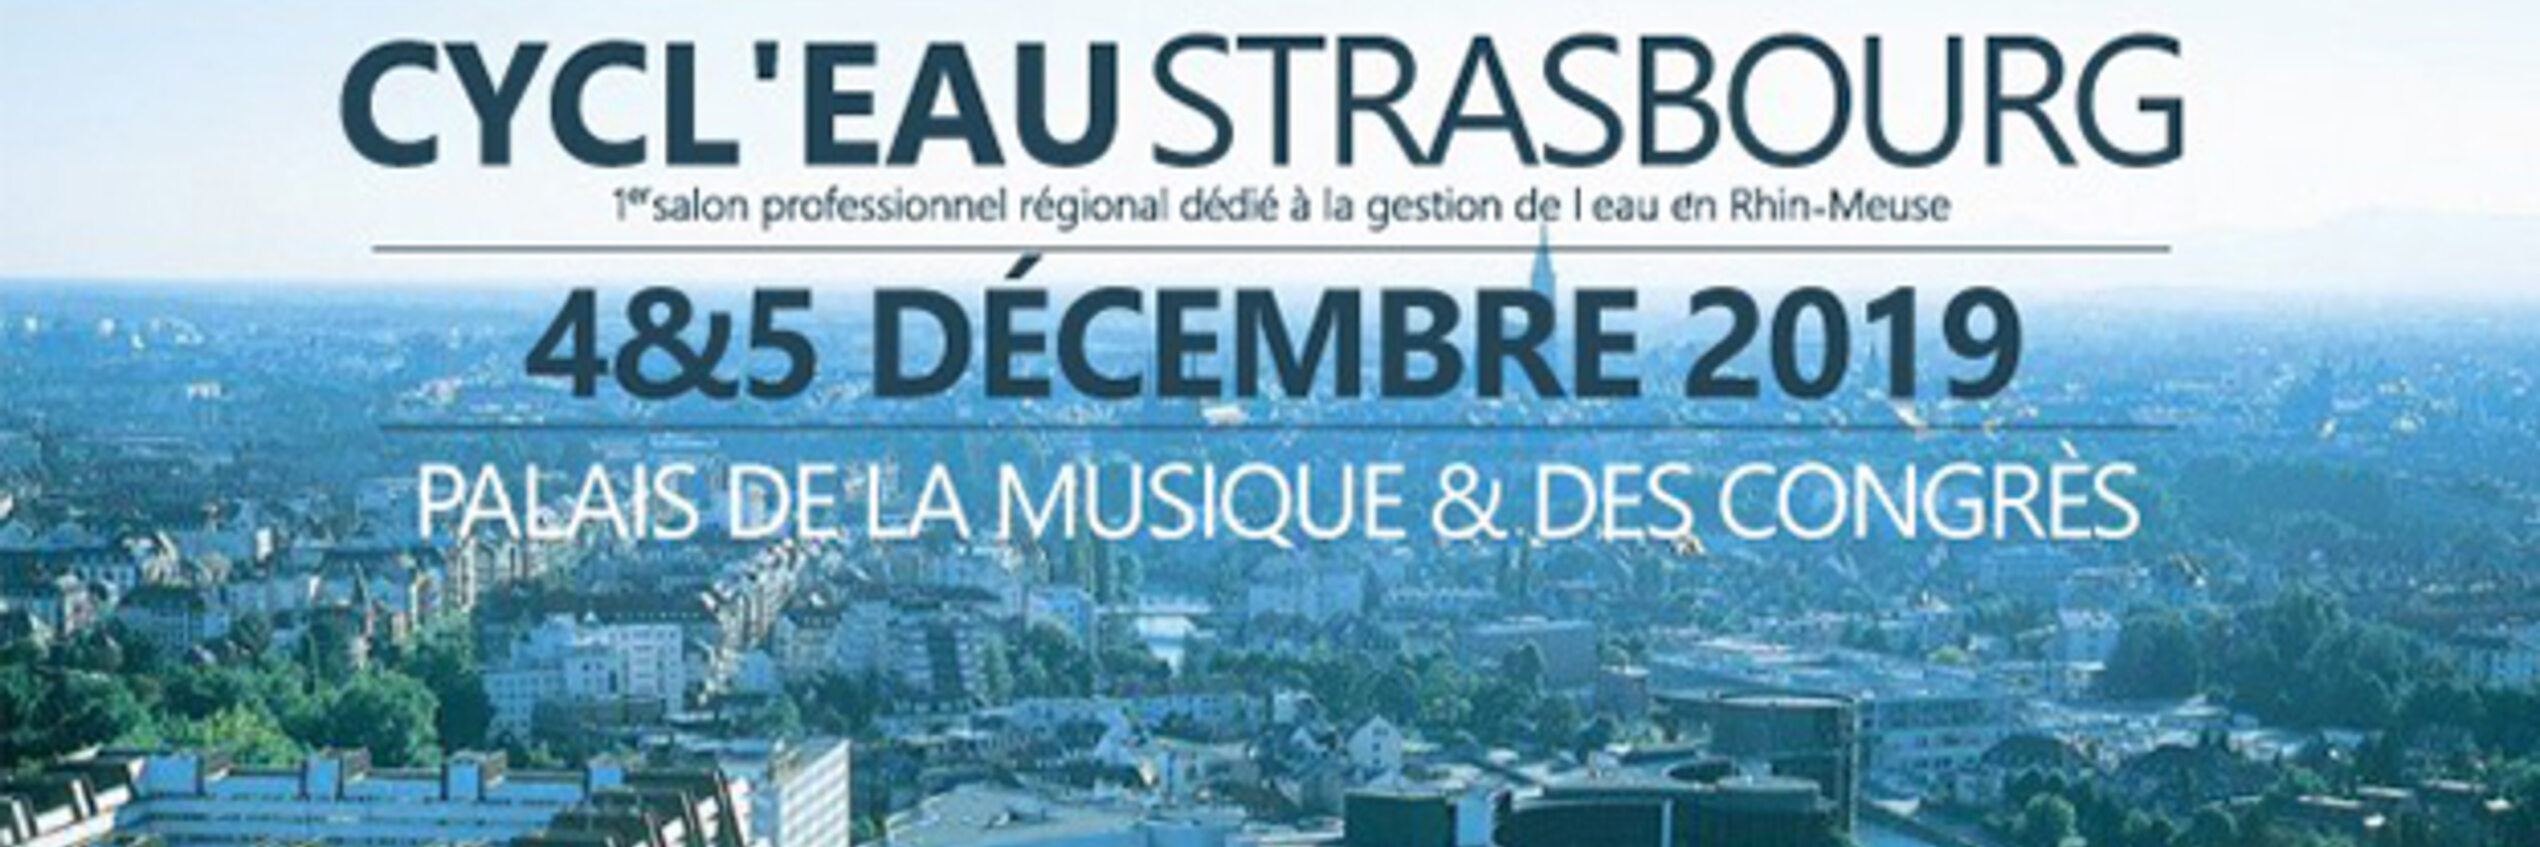 Cycl’Eau Strasbourg, 4 et 5 décembre 2019, Stand C9